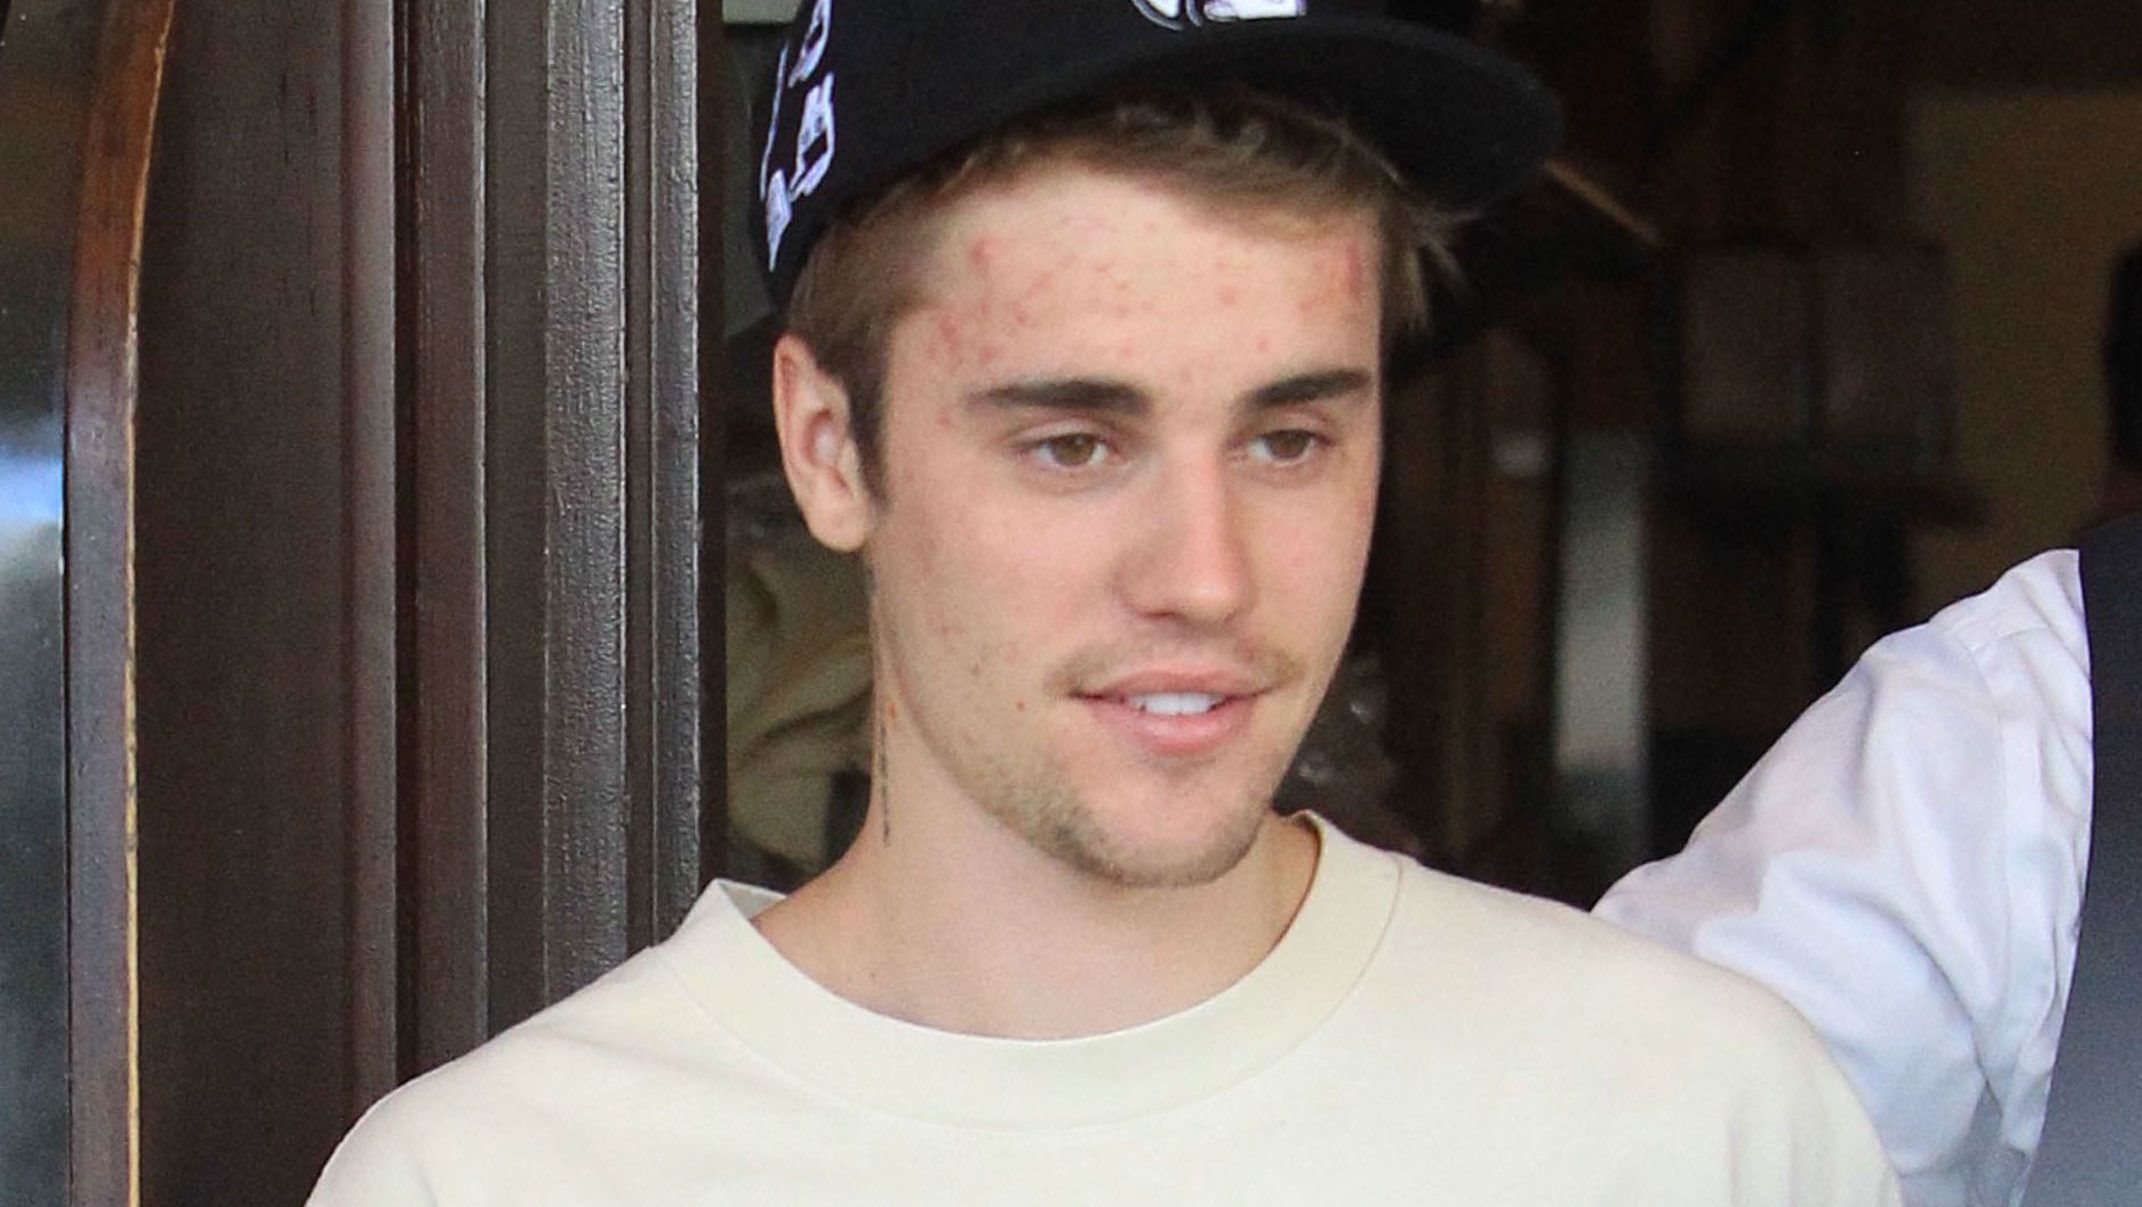 Justin Bieber: Azt hitték, hogy meth függő vagyok, nem tudták, hogy Lyme-kórral diagnosztizáltak